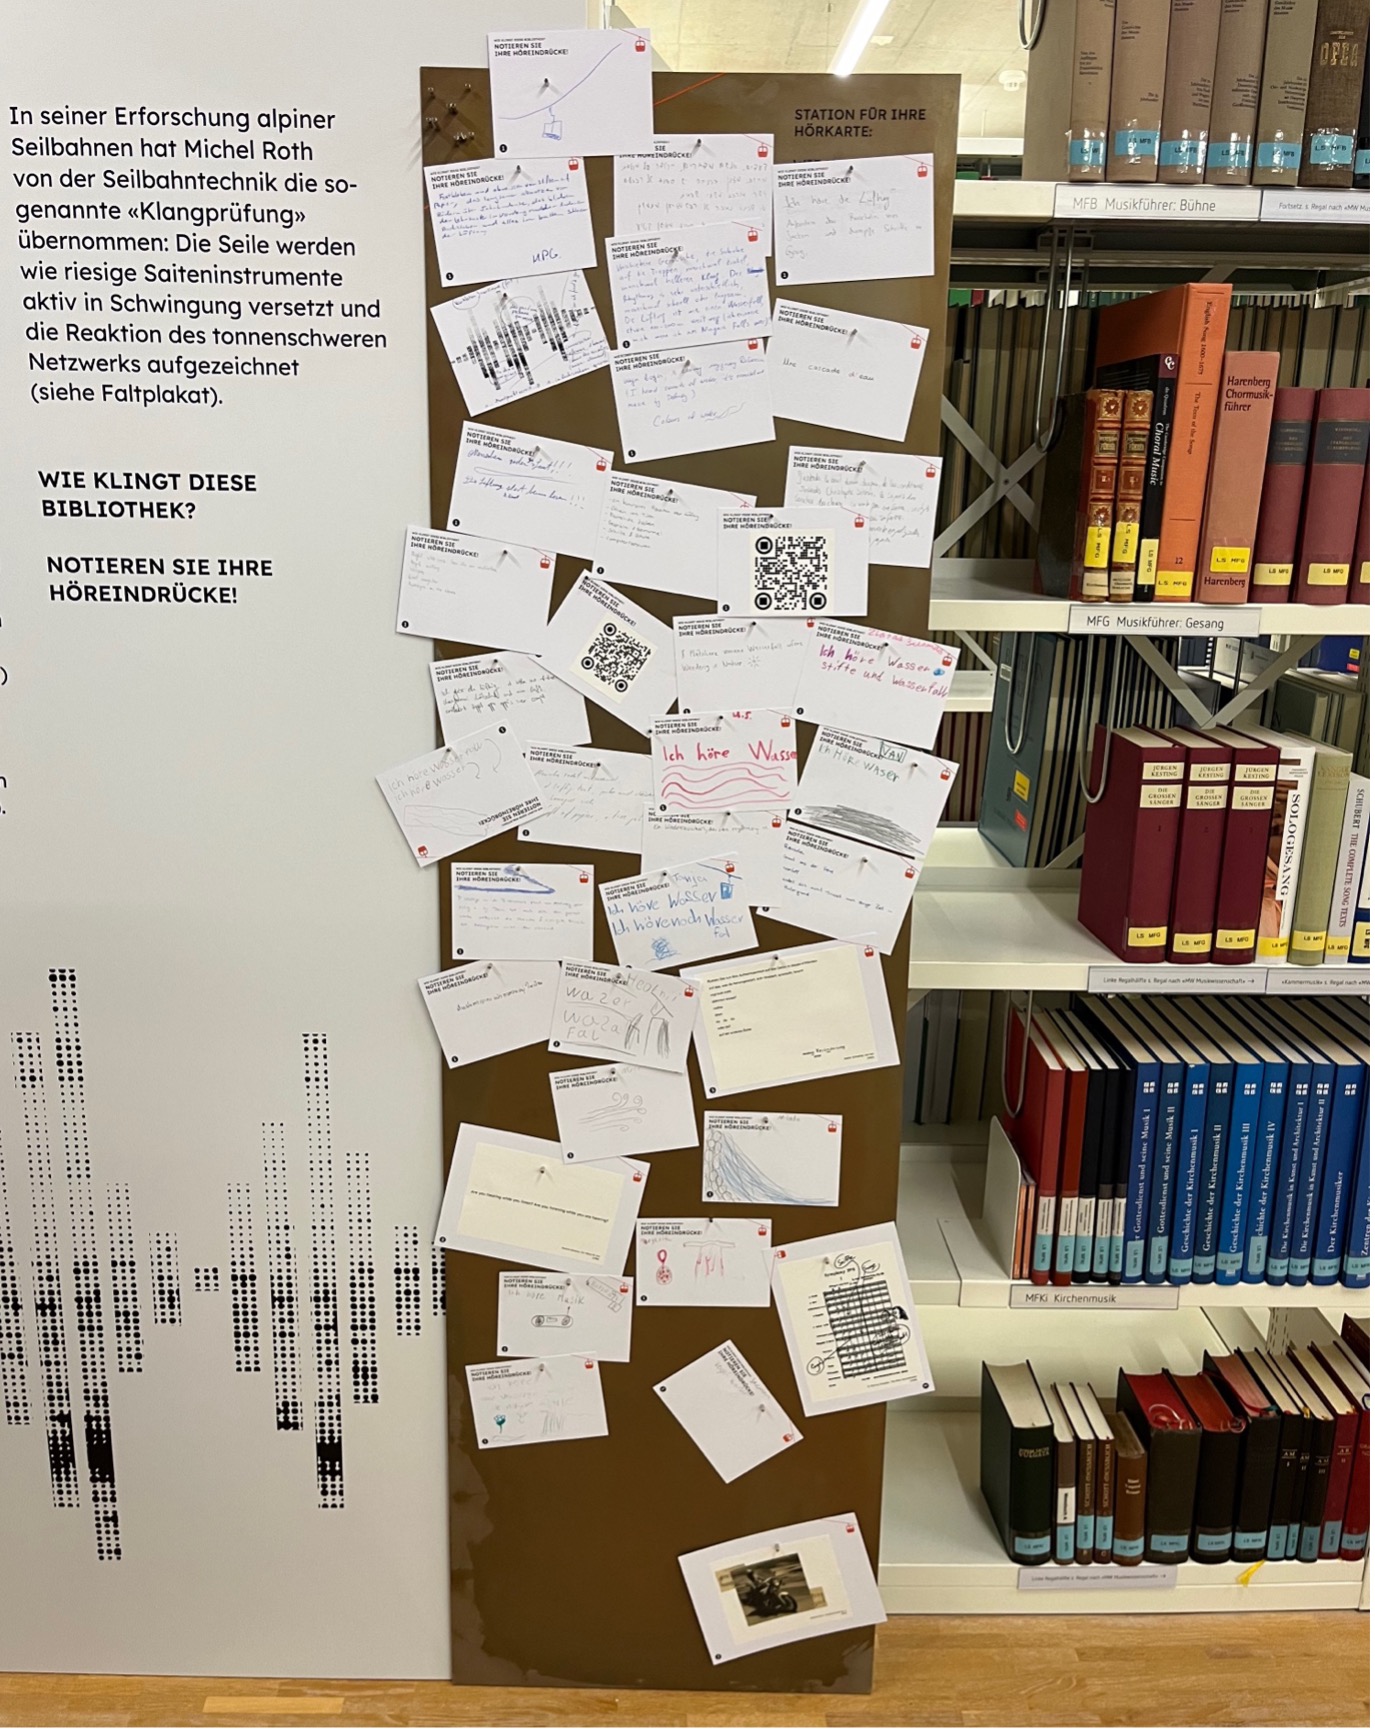 Abbildung 16: Eine Magnettafel mit beschrifteten Postkarten zum Klang der Vera Oeri Bibliothek. Foto: Michel Roth. (CC BY 4.0)